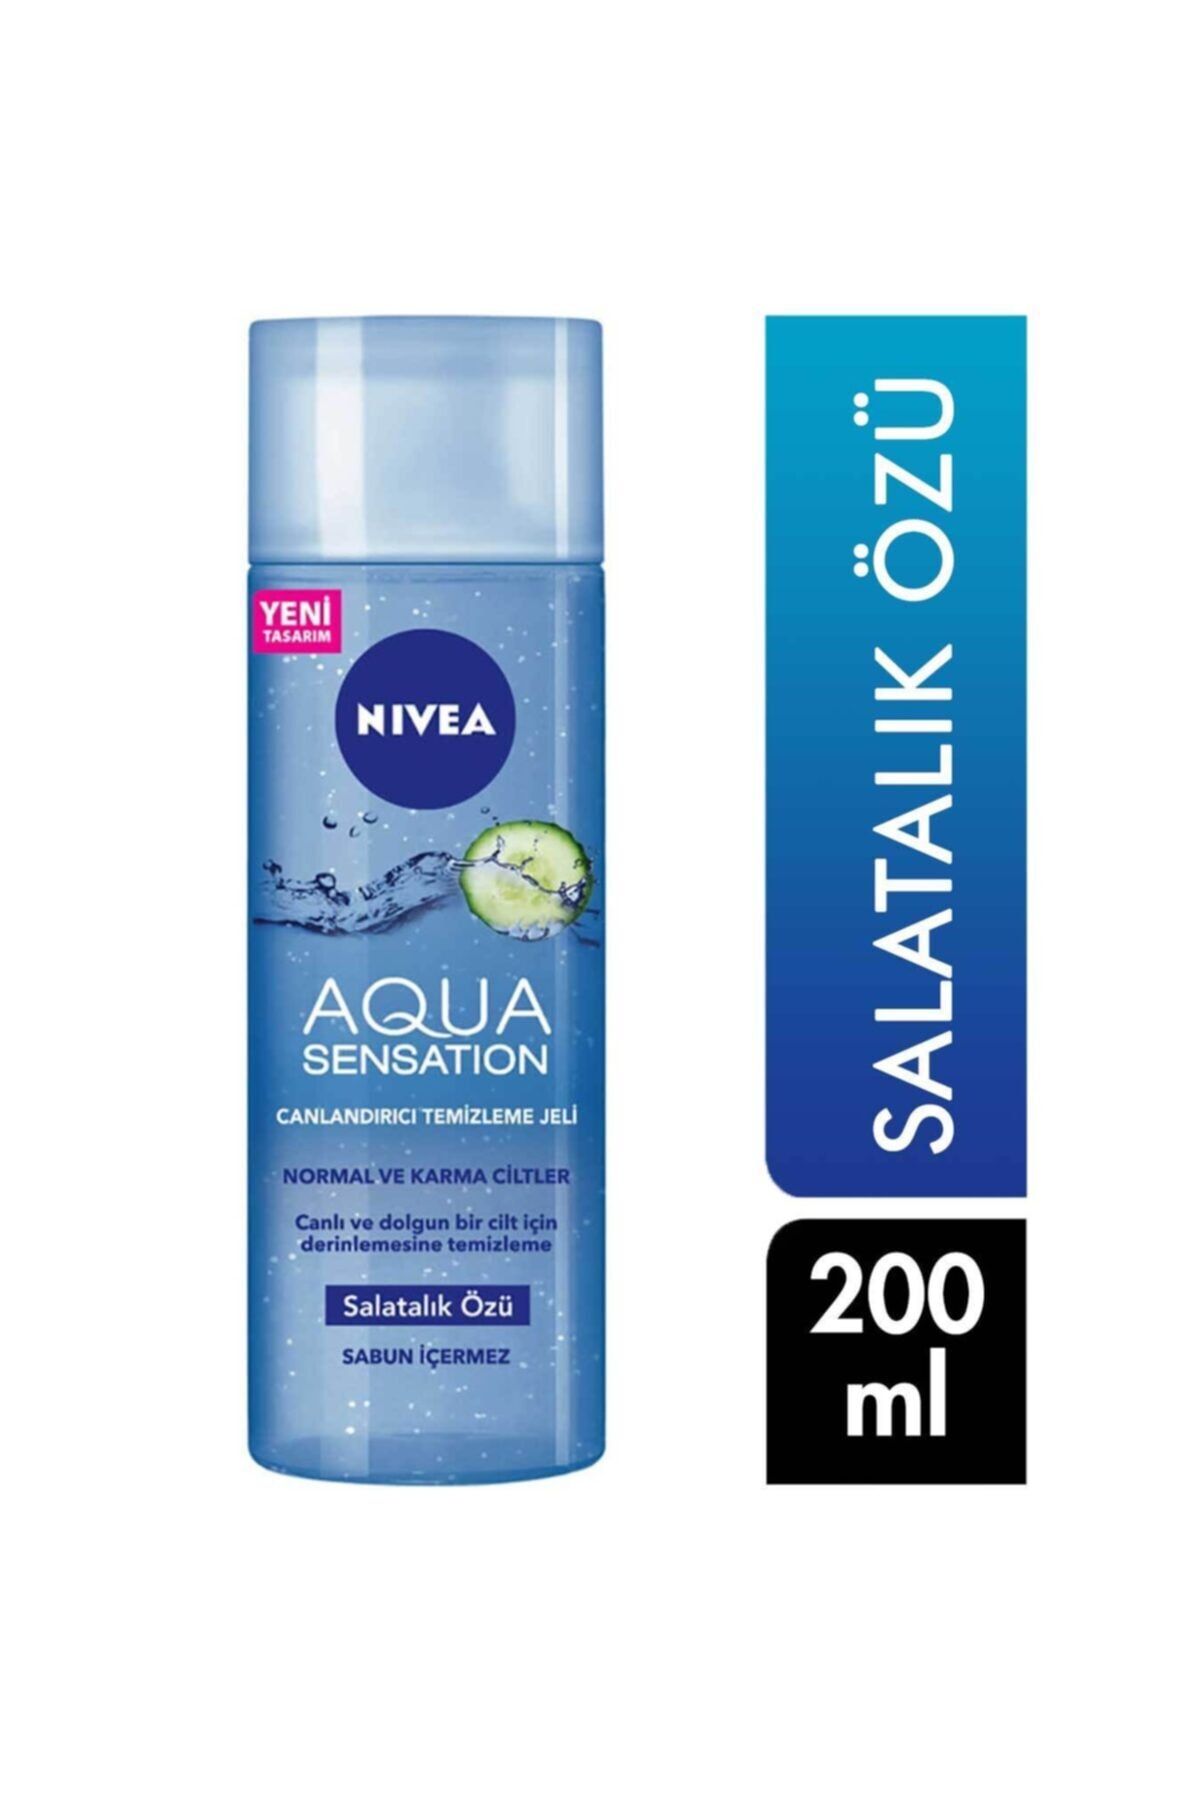 NIVEA Aqua Sensation Canlandırıcı Yüz Temizleme Jeli 200 Ml